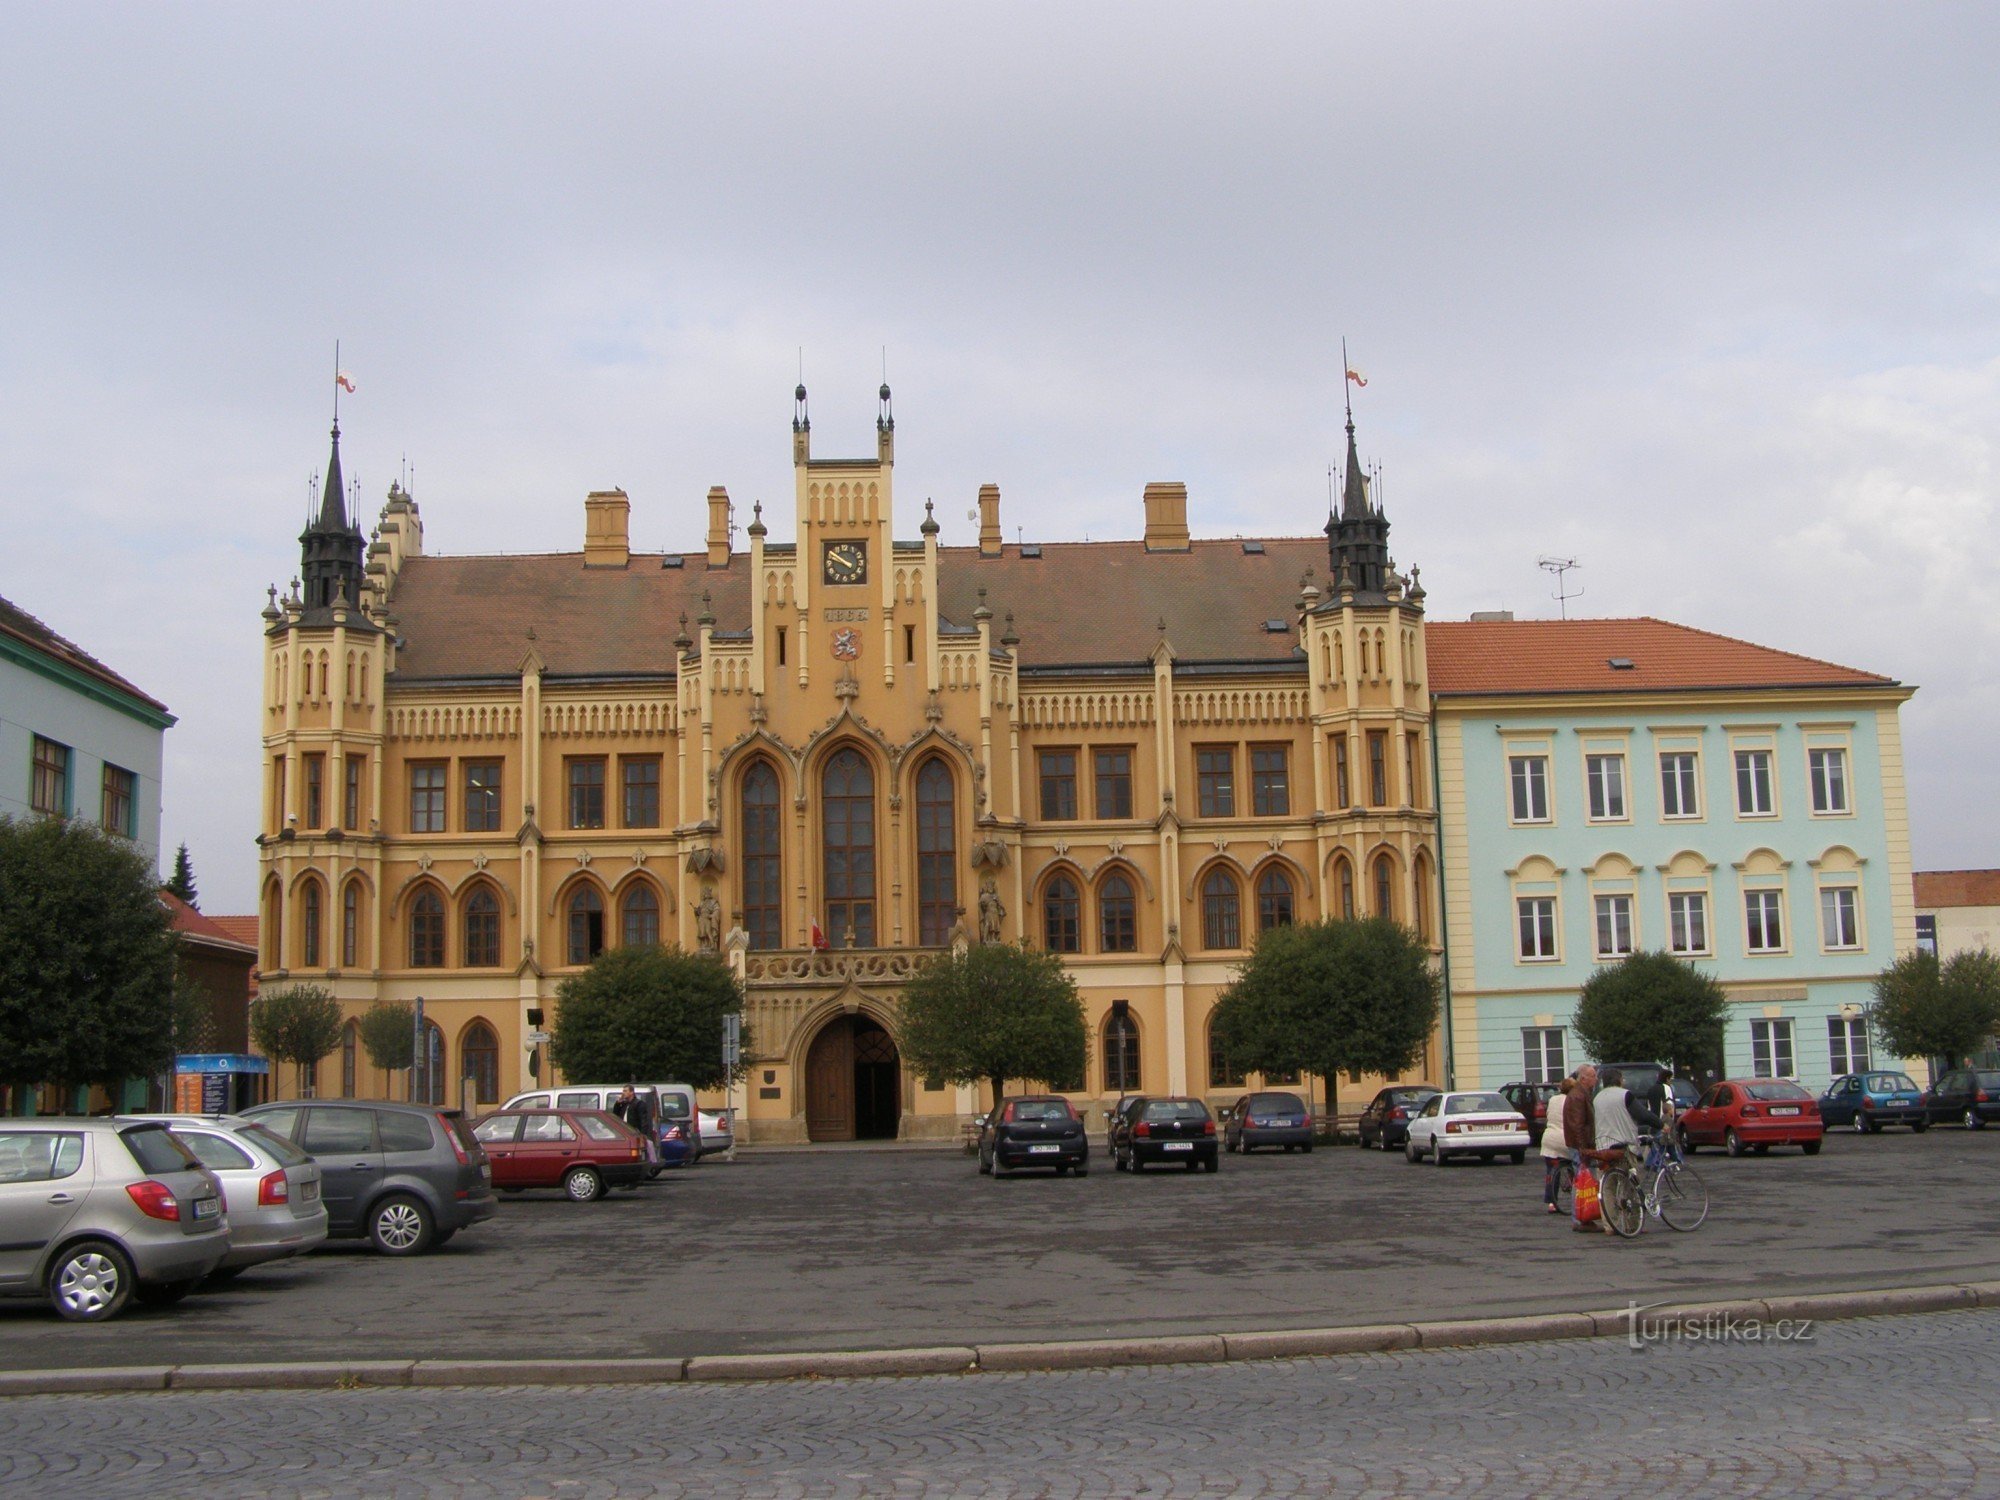 Nový Bydžov - rådhus